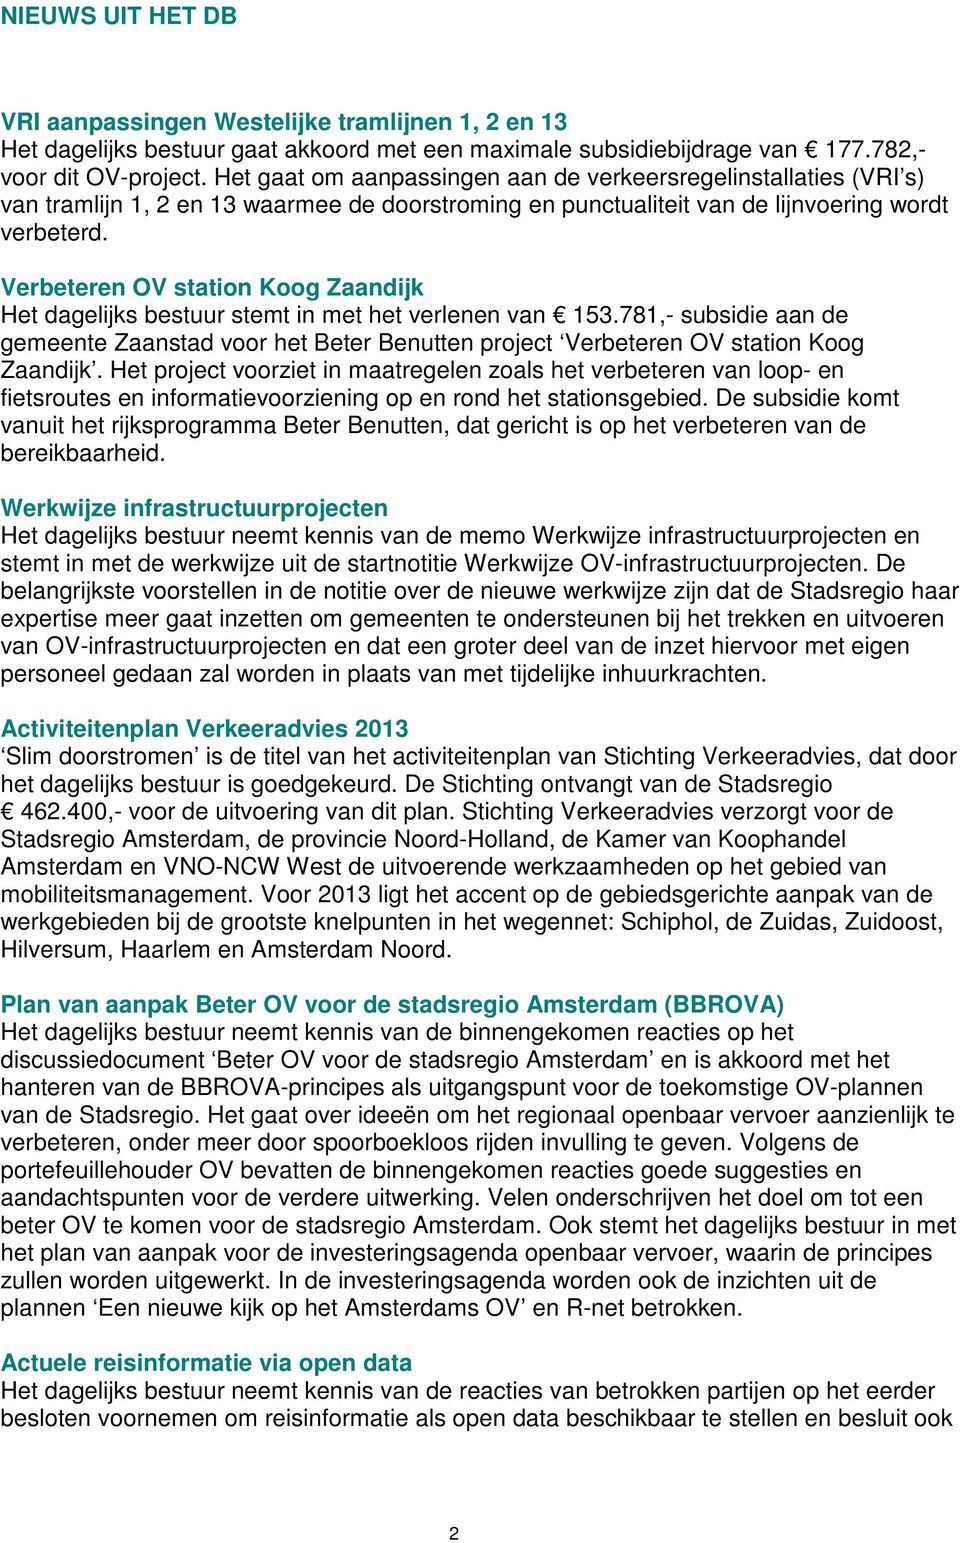 Verbeteren OV station Koog Zaandijk Het dagelijks bestuur stemt in met het verlenen van 153.781,- subsidie aan de gemeente Zaanstad voor het Beter Benutten project Verbeteren OV station Koog Zaandijk.